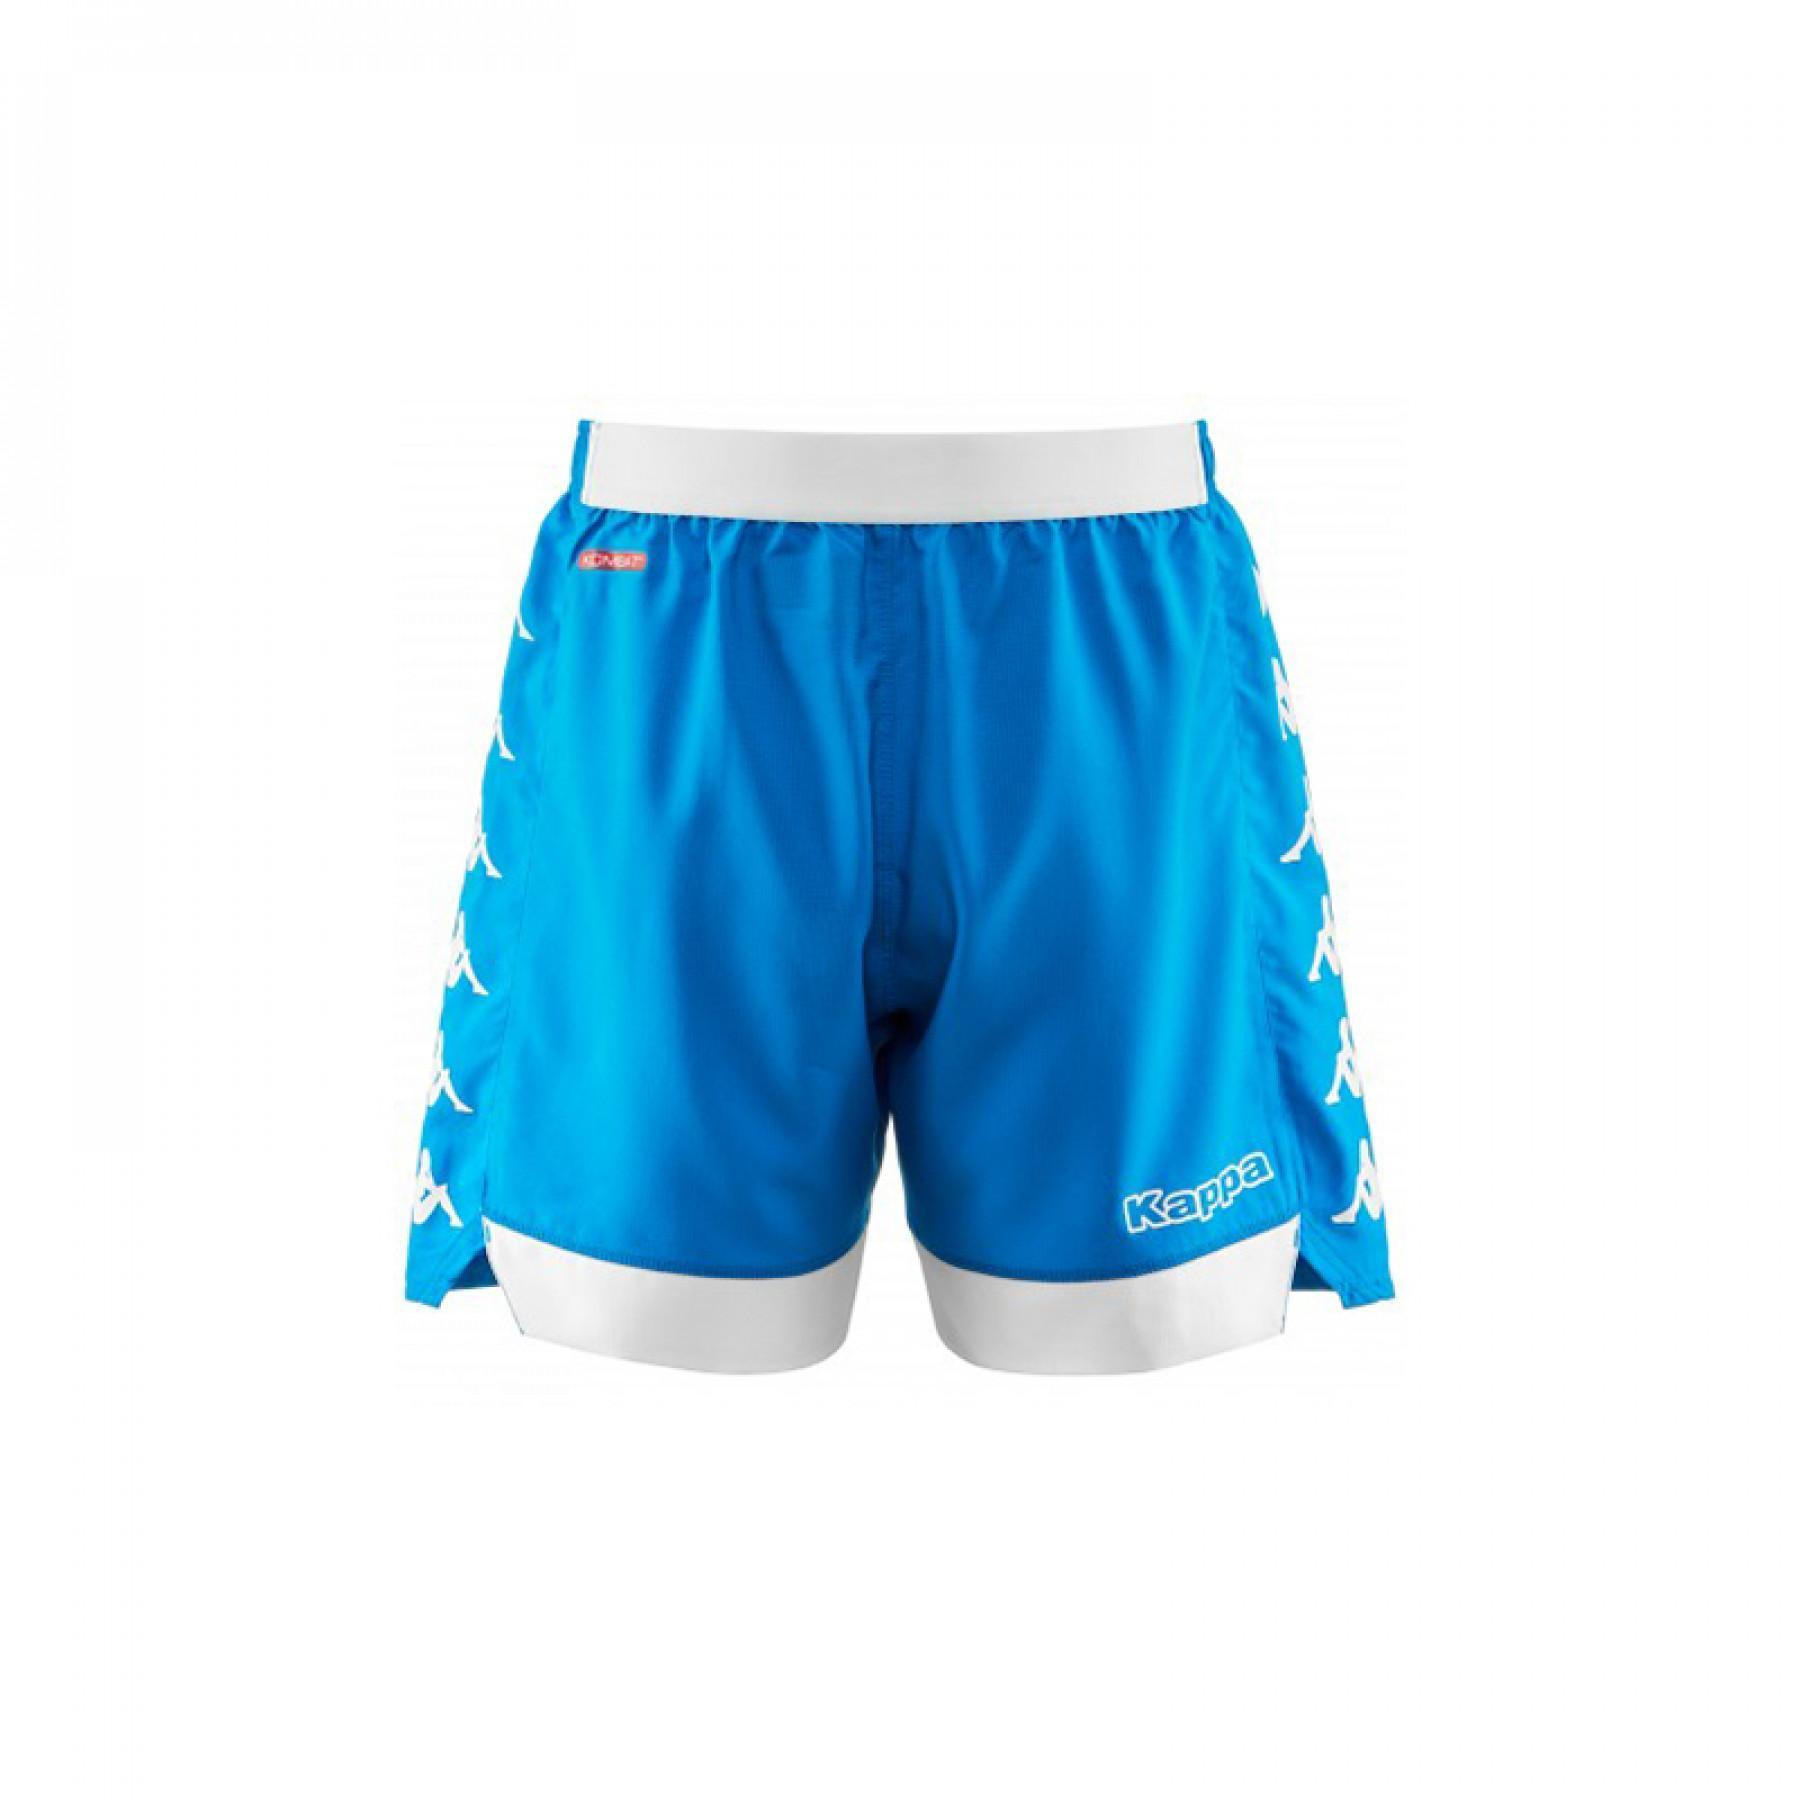 Pantalones cortos para el hogar SSC Napoli bleu 2018/19